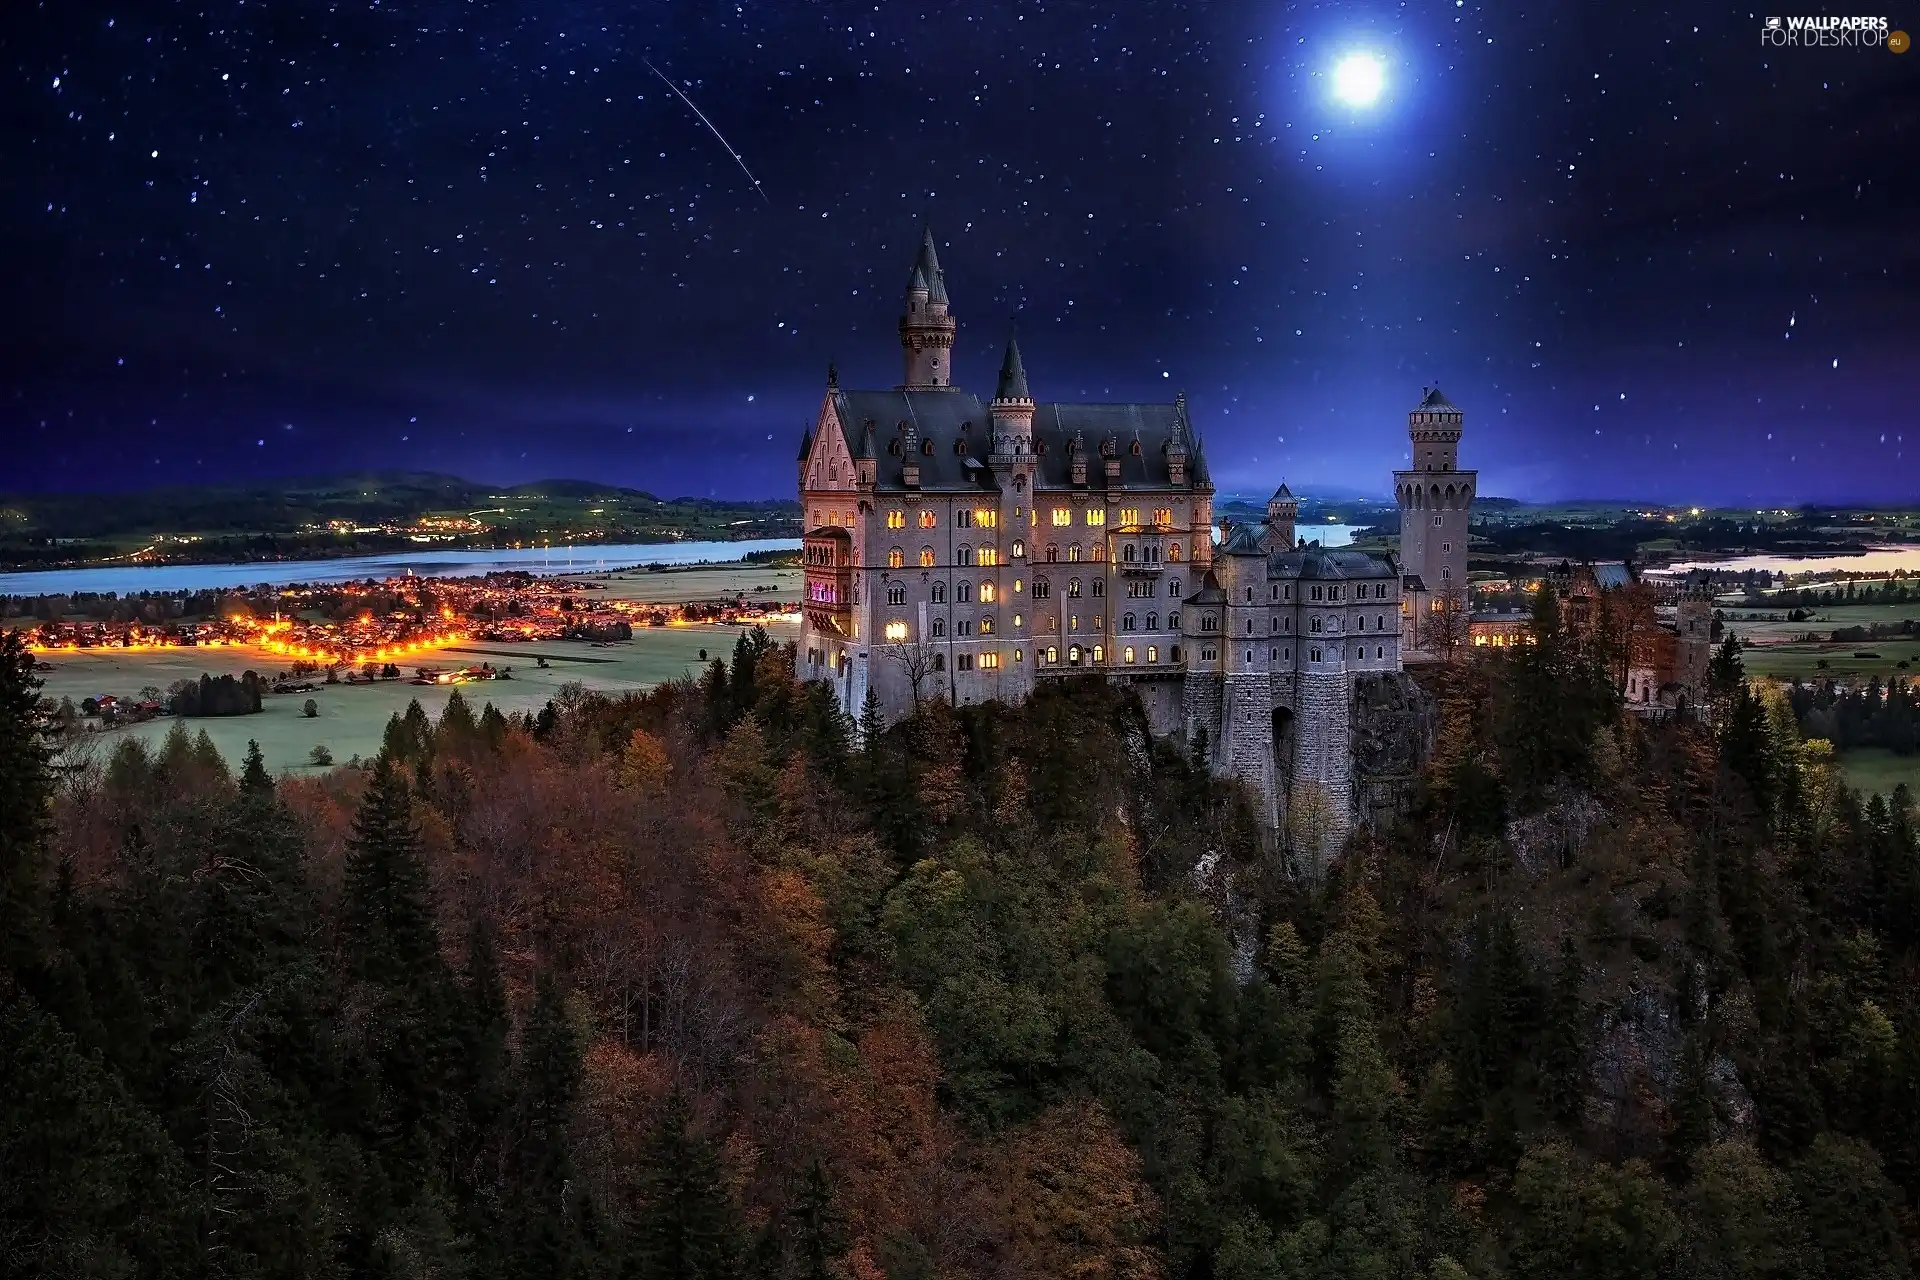 Night, Neuschwanstein Castle, Germany